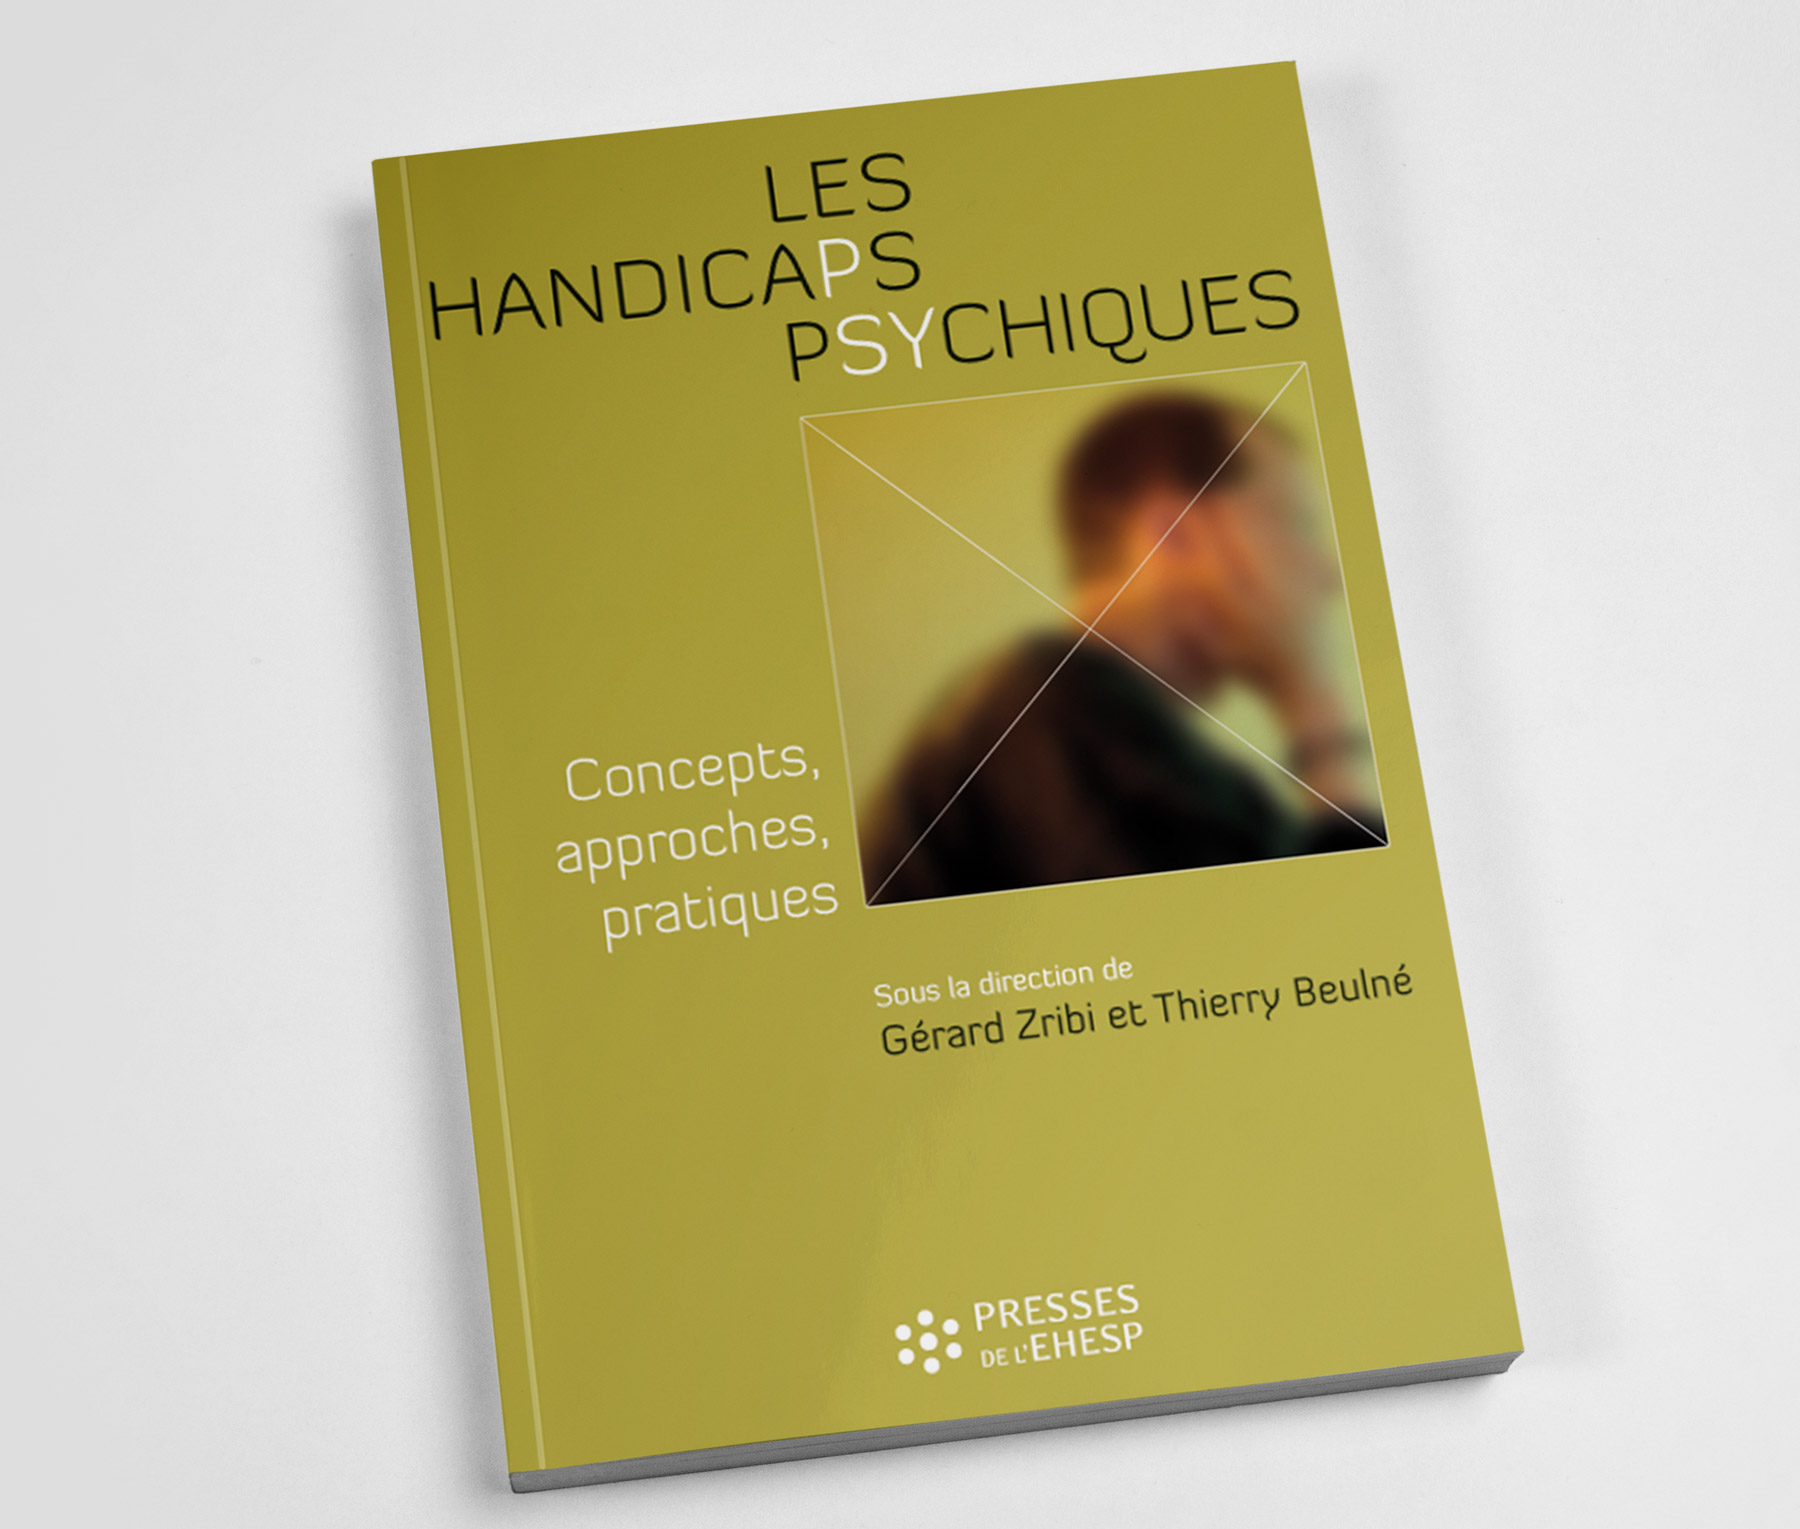 Publication Les handicaps psychiques par Gérard Zribi et Thierry Beulné